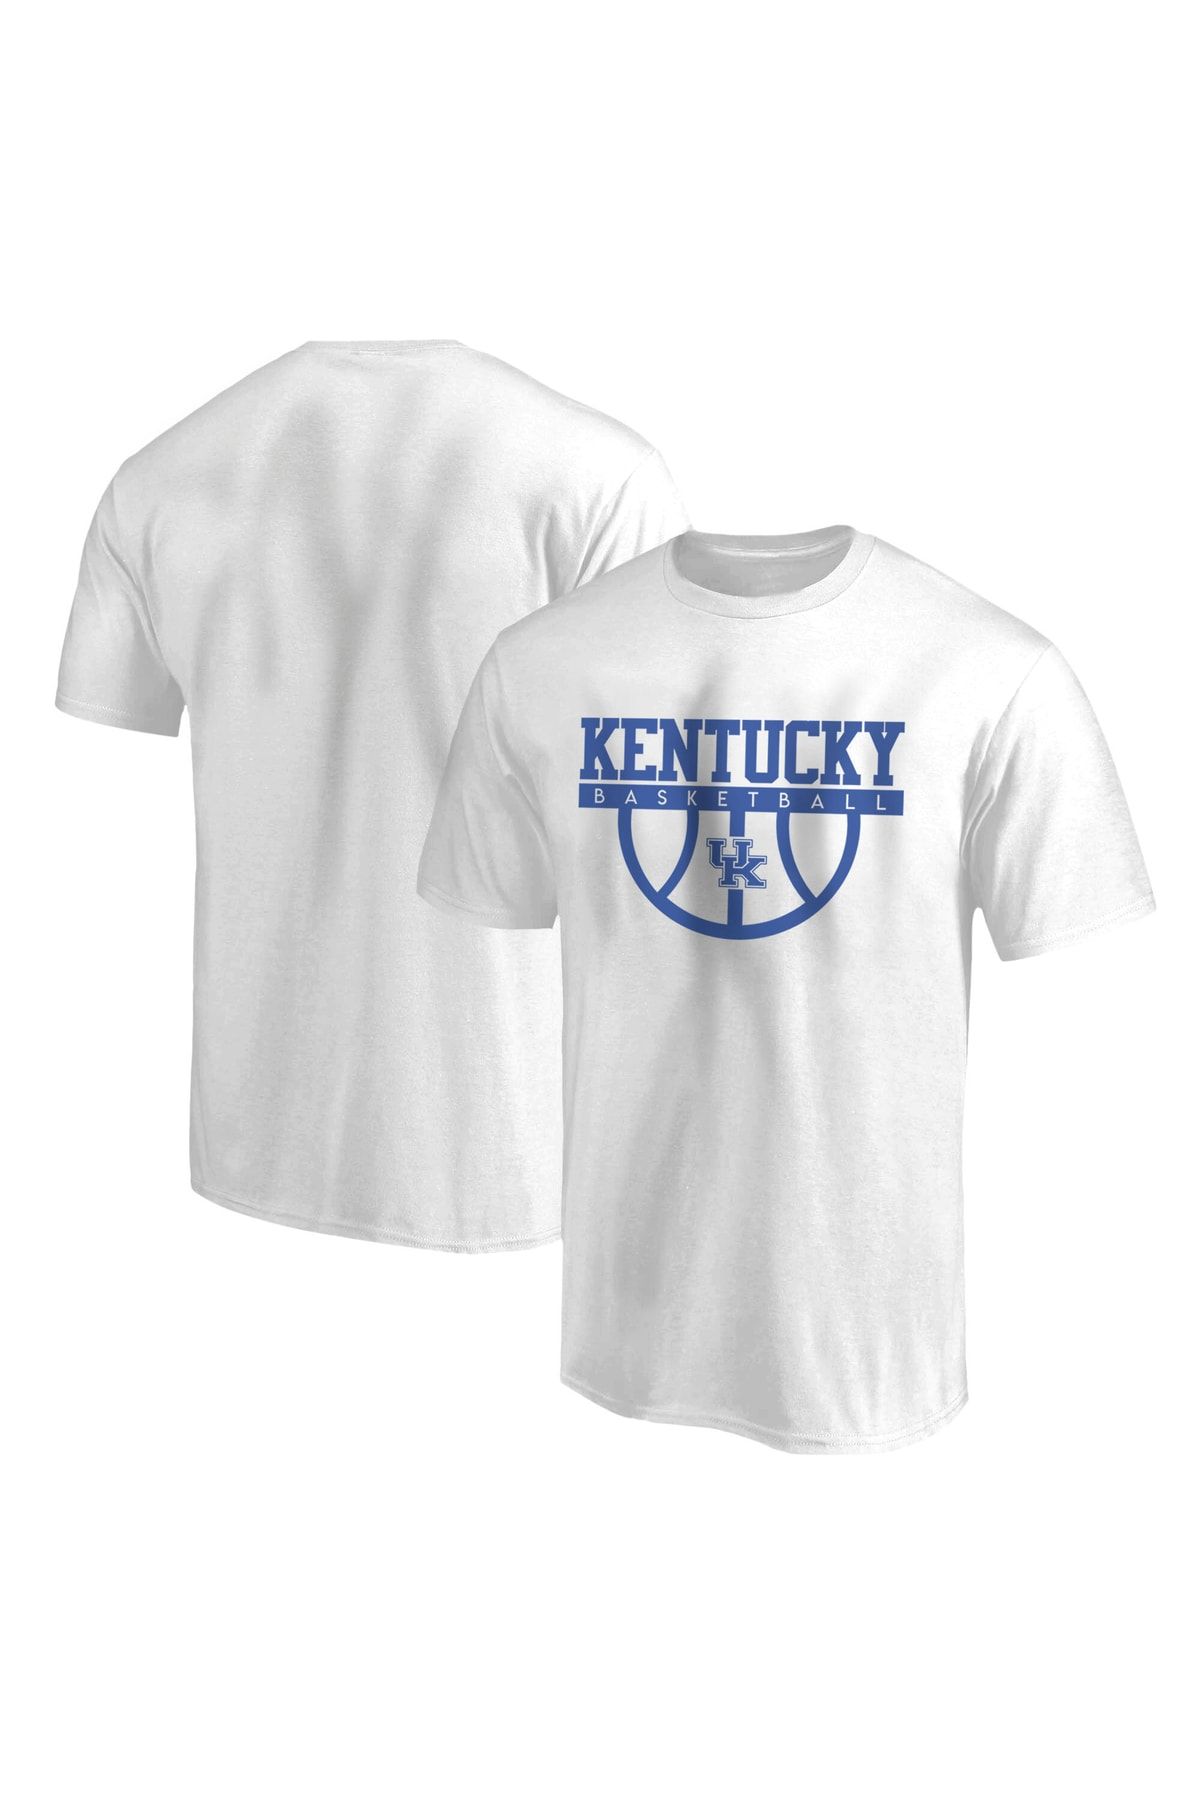 Usateamfans Kentucky Wildcats Tshirt